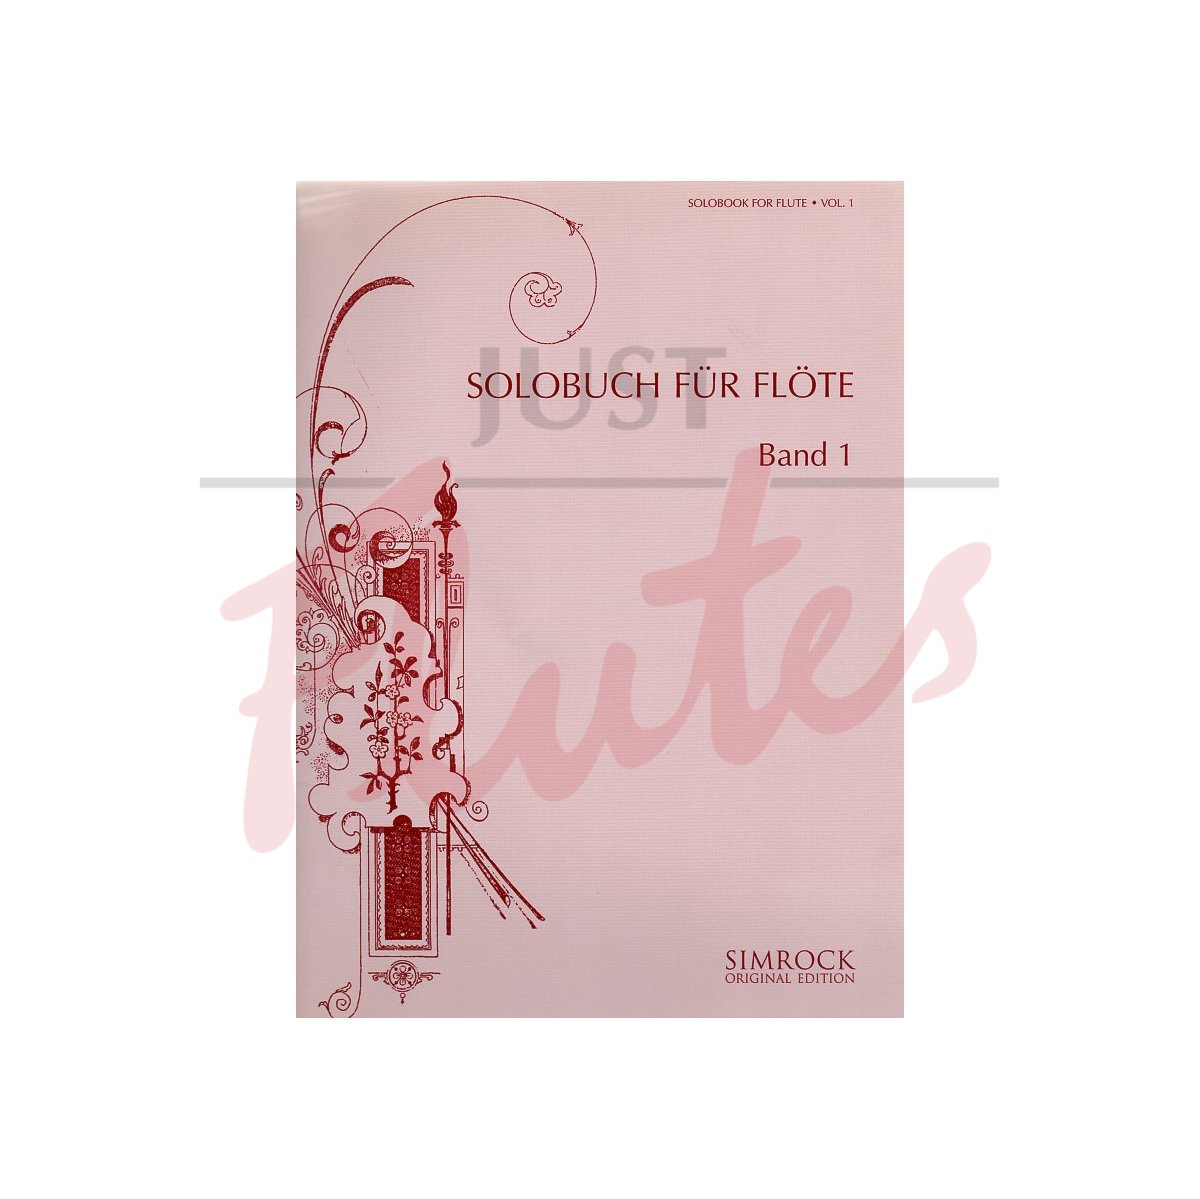 Solo Book for Flute Vol 1